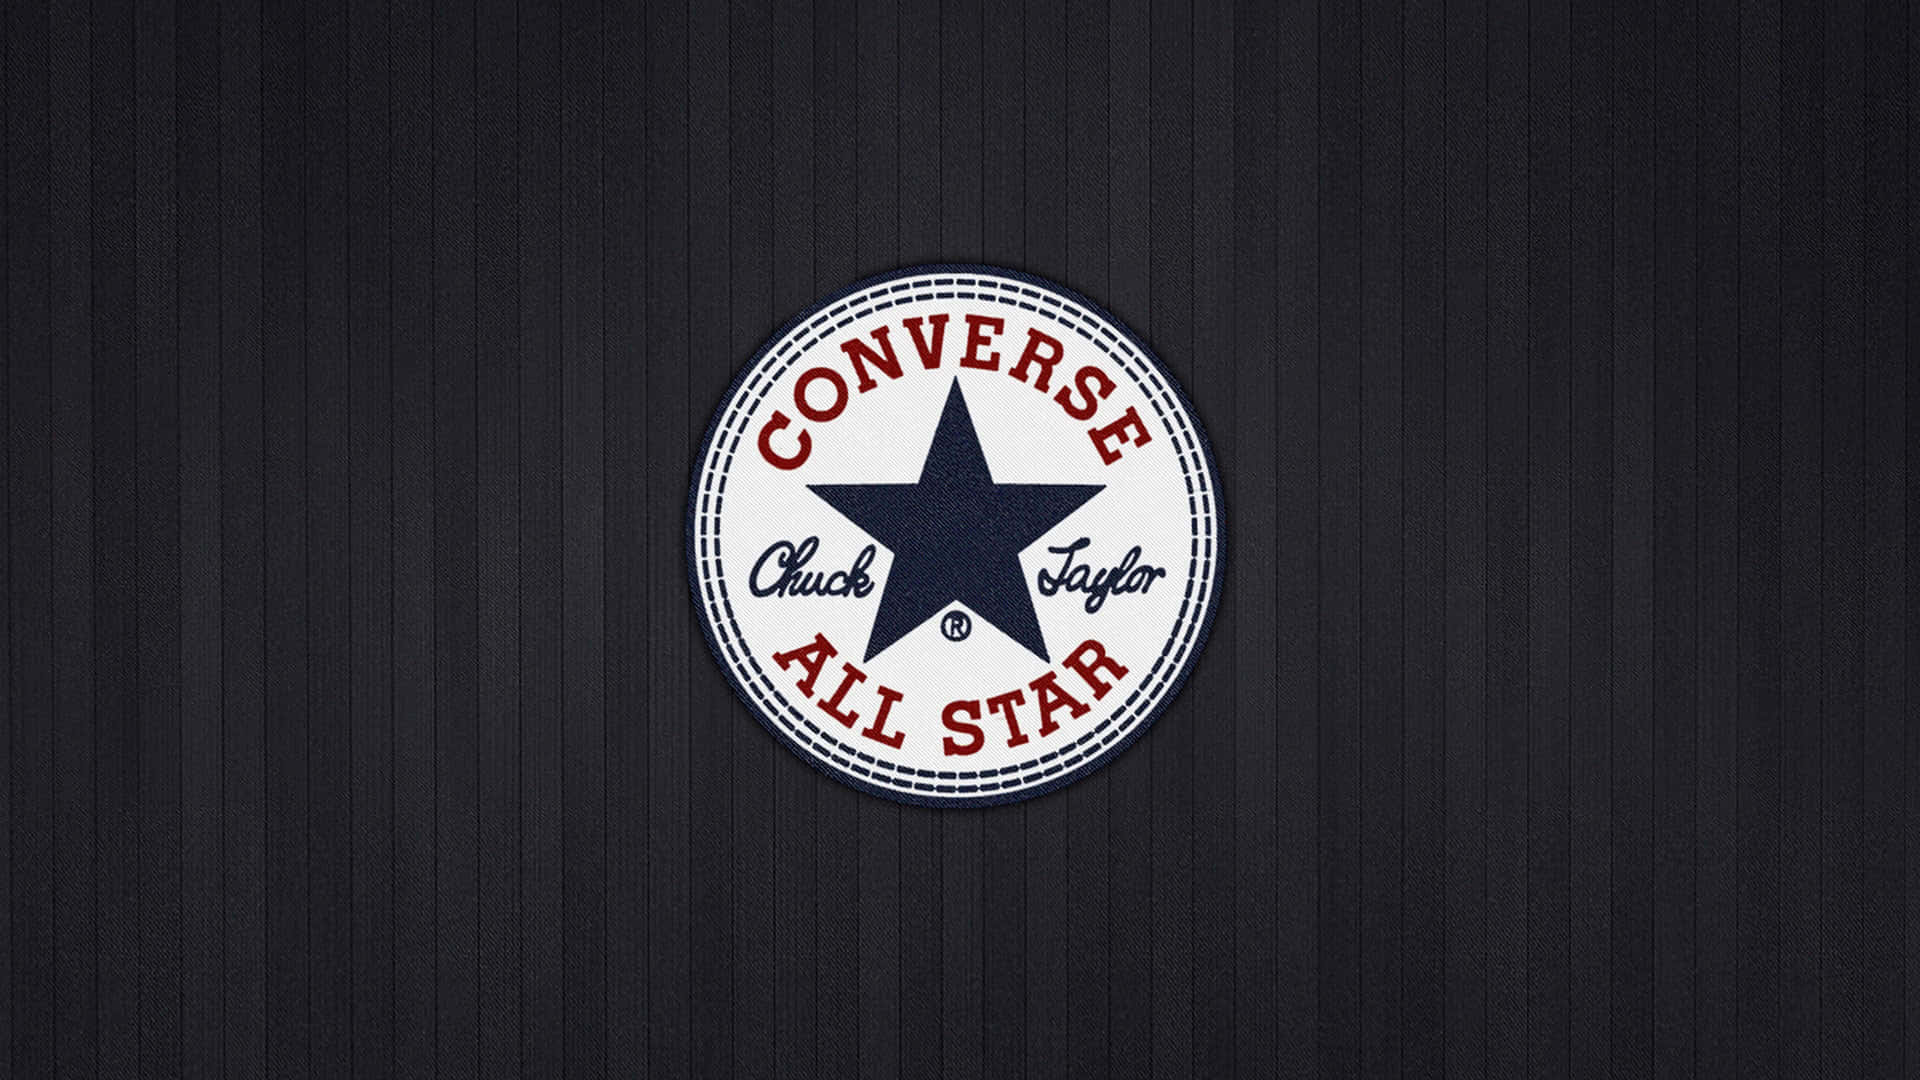 Estiloclásico Y Diseño Atemporal: Logo De Converse.